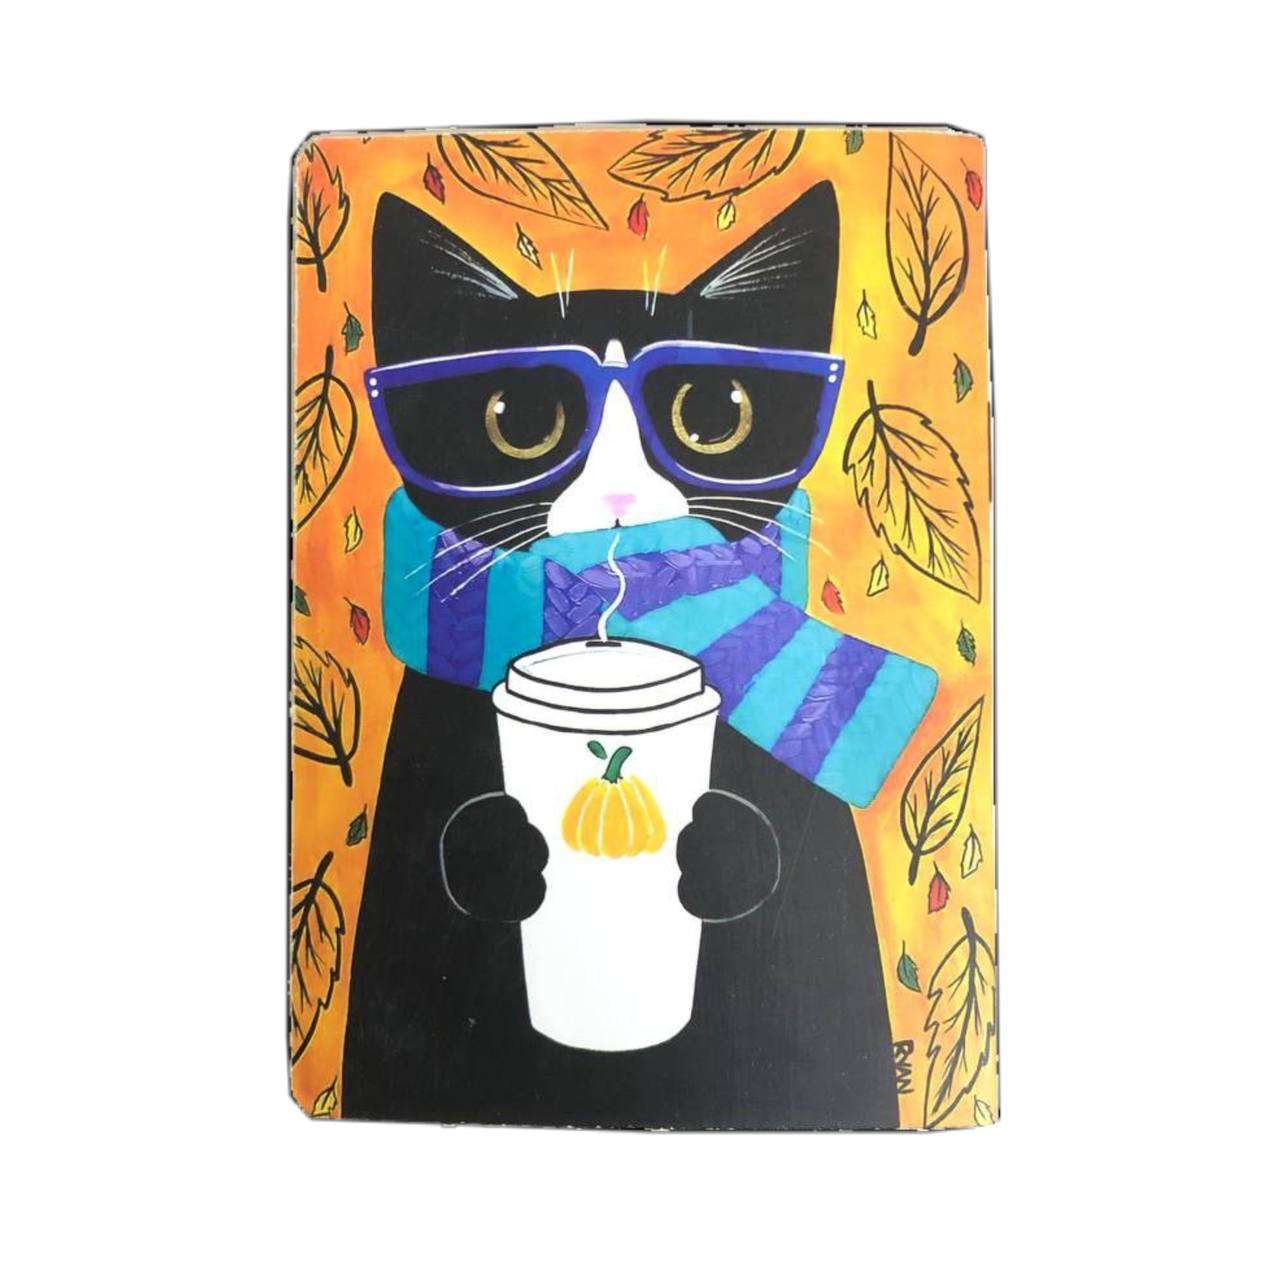 خرید انلاین دفترچه پاسپورتی طرح گربه در وبسایت دوشنبه کالا